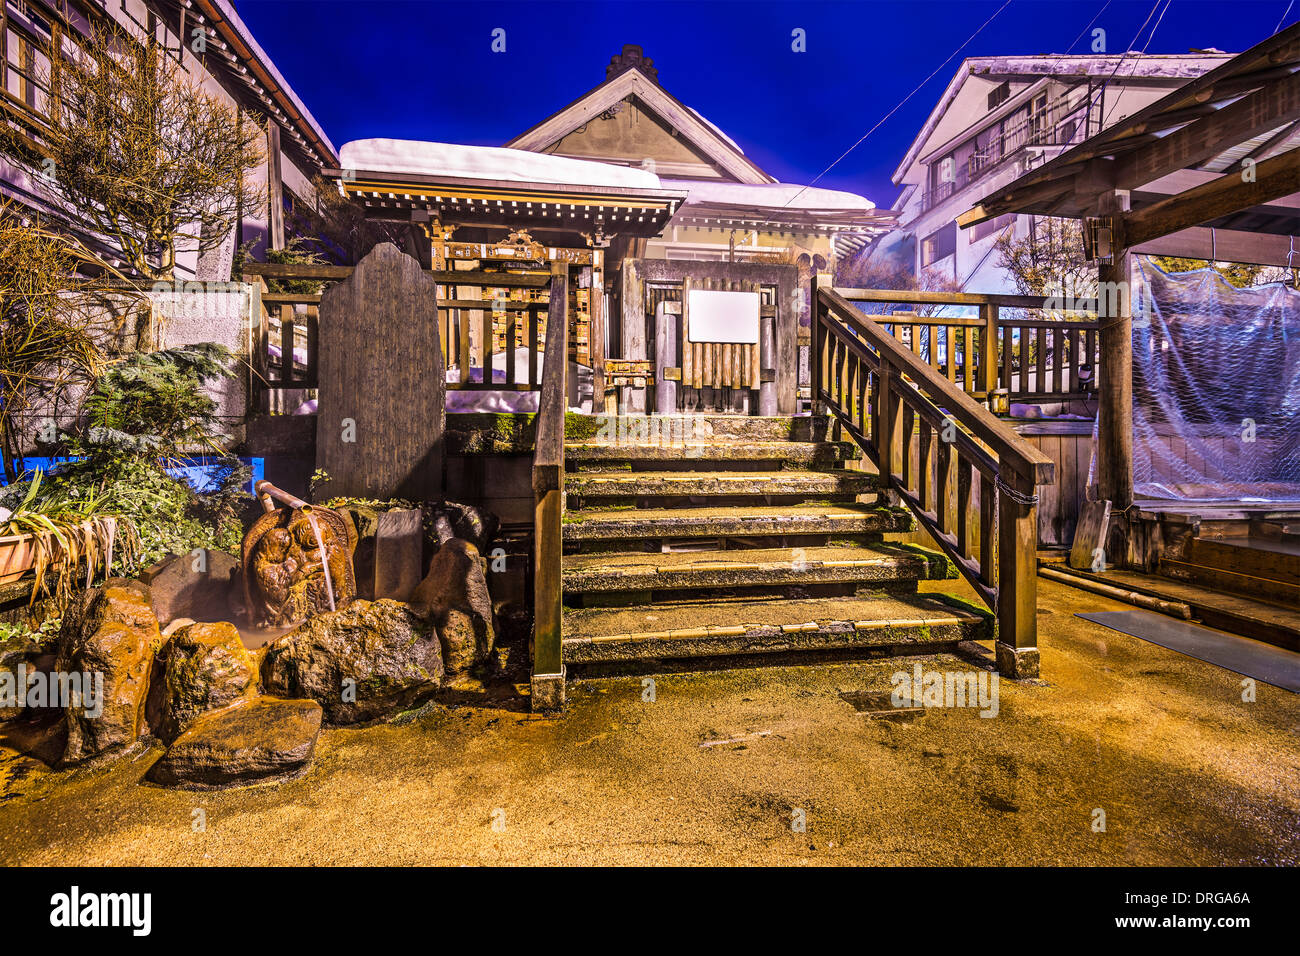 Nagano, Japan at the hot spring bath houses of Shibu Onsen resort town. Stock Photo